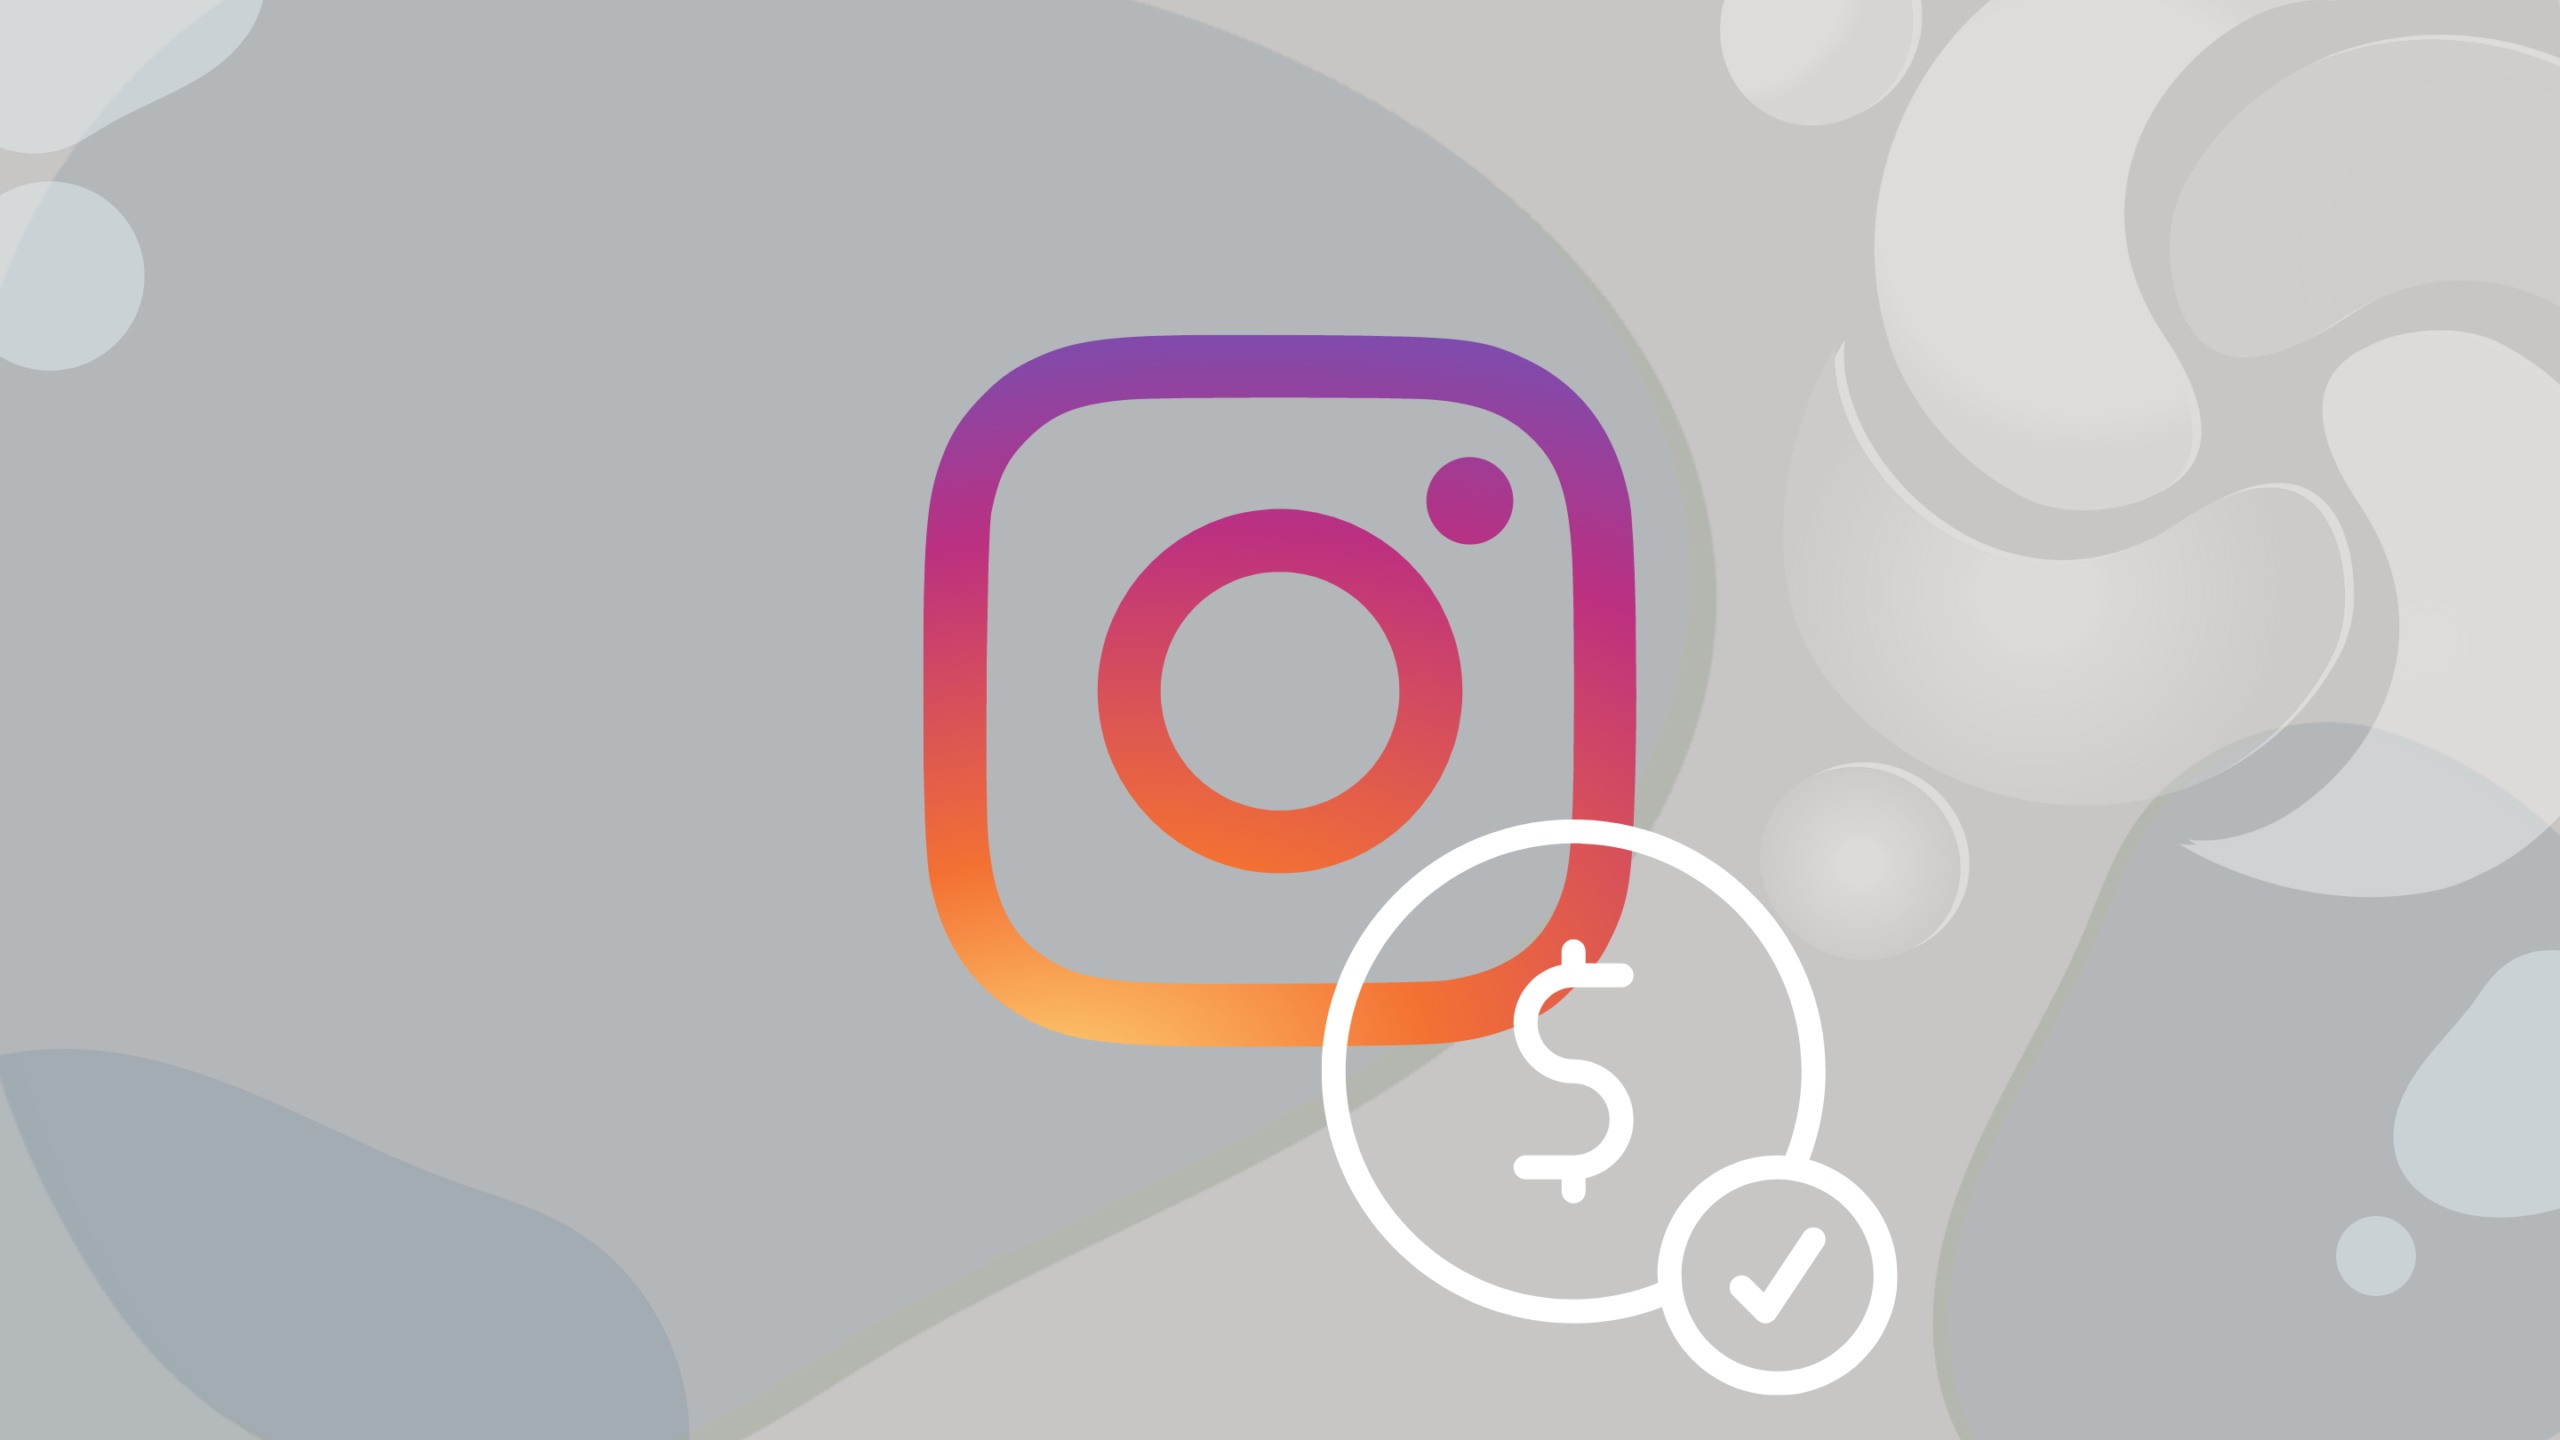 eua-instagram-testa-novos-recursos-de-assinatura